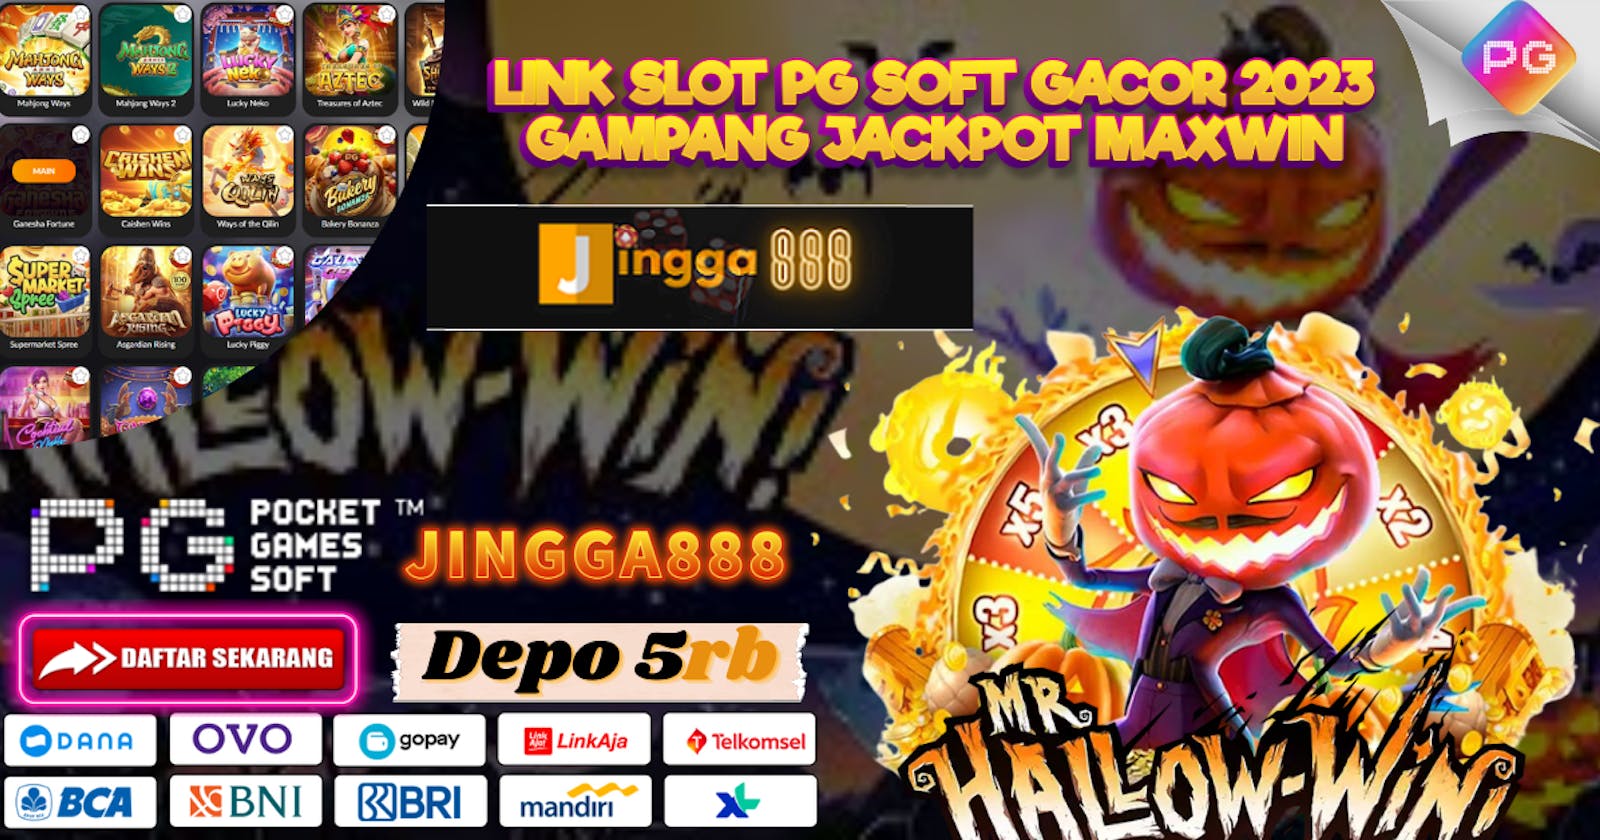 Link Slot Pg Soft Gacor 2023 Gampang Jackpot Maxwin